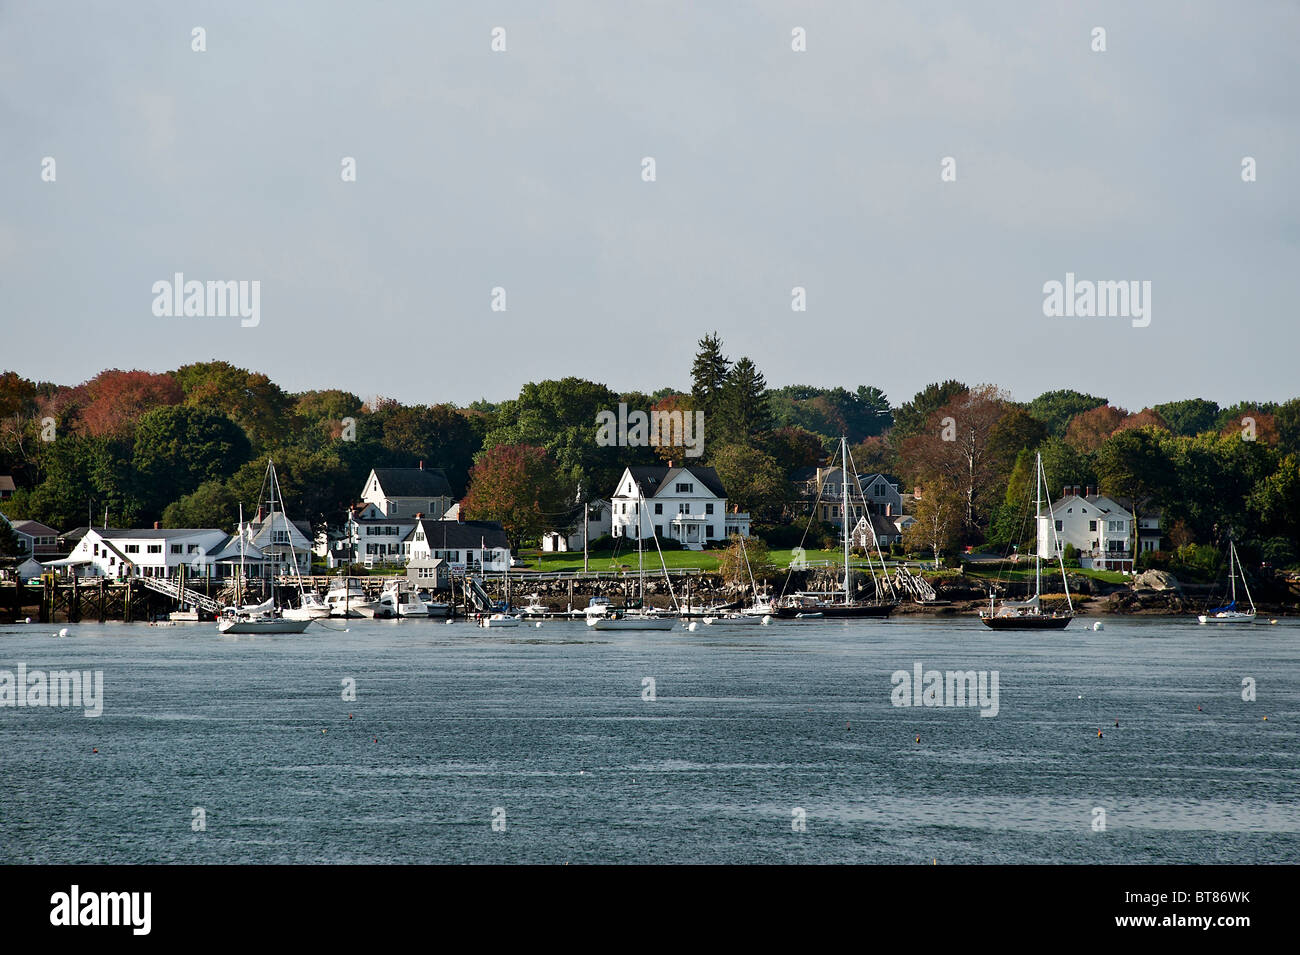 Boat scenic, New Castle, New Hampshire, USA Stock Photo